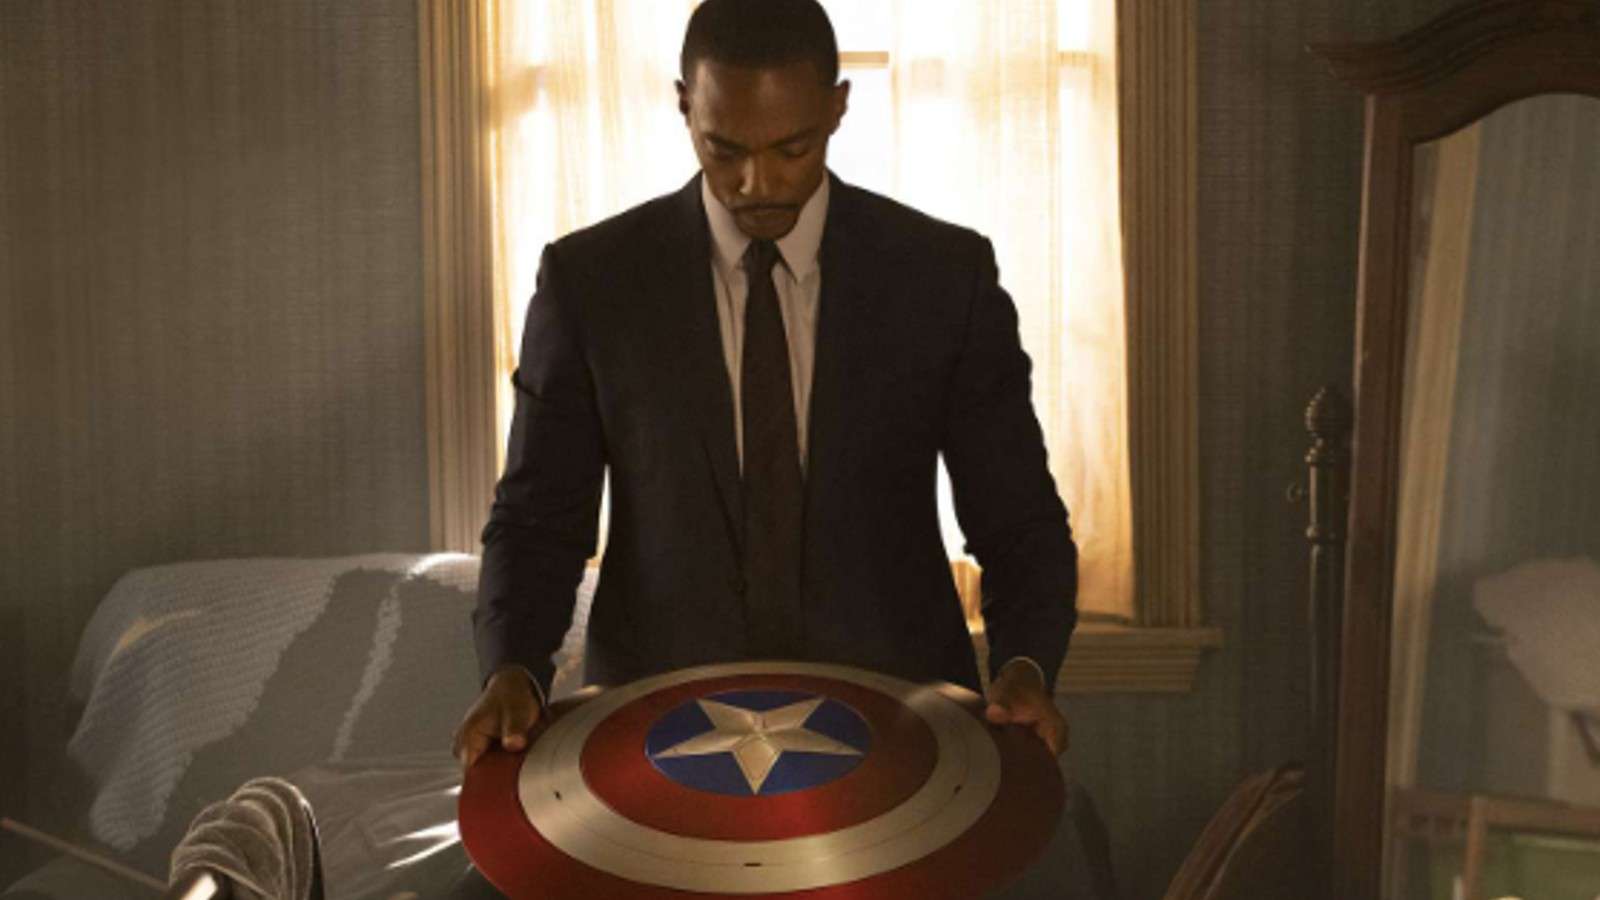 Sam Wilson holds the Captain America shield